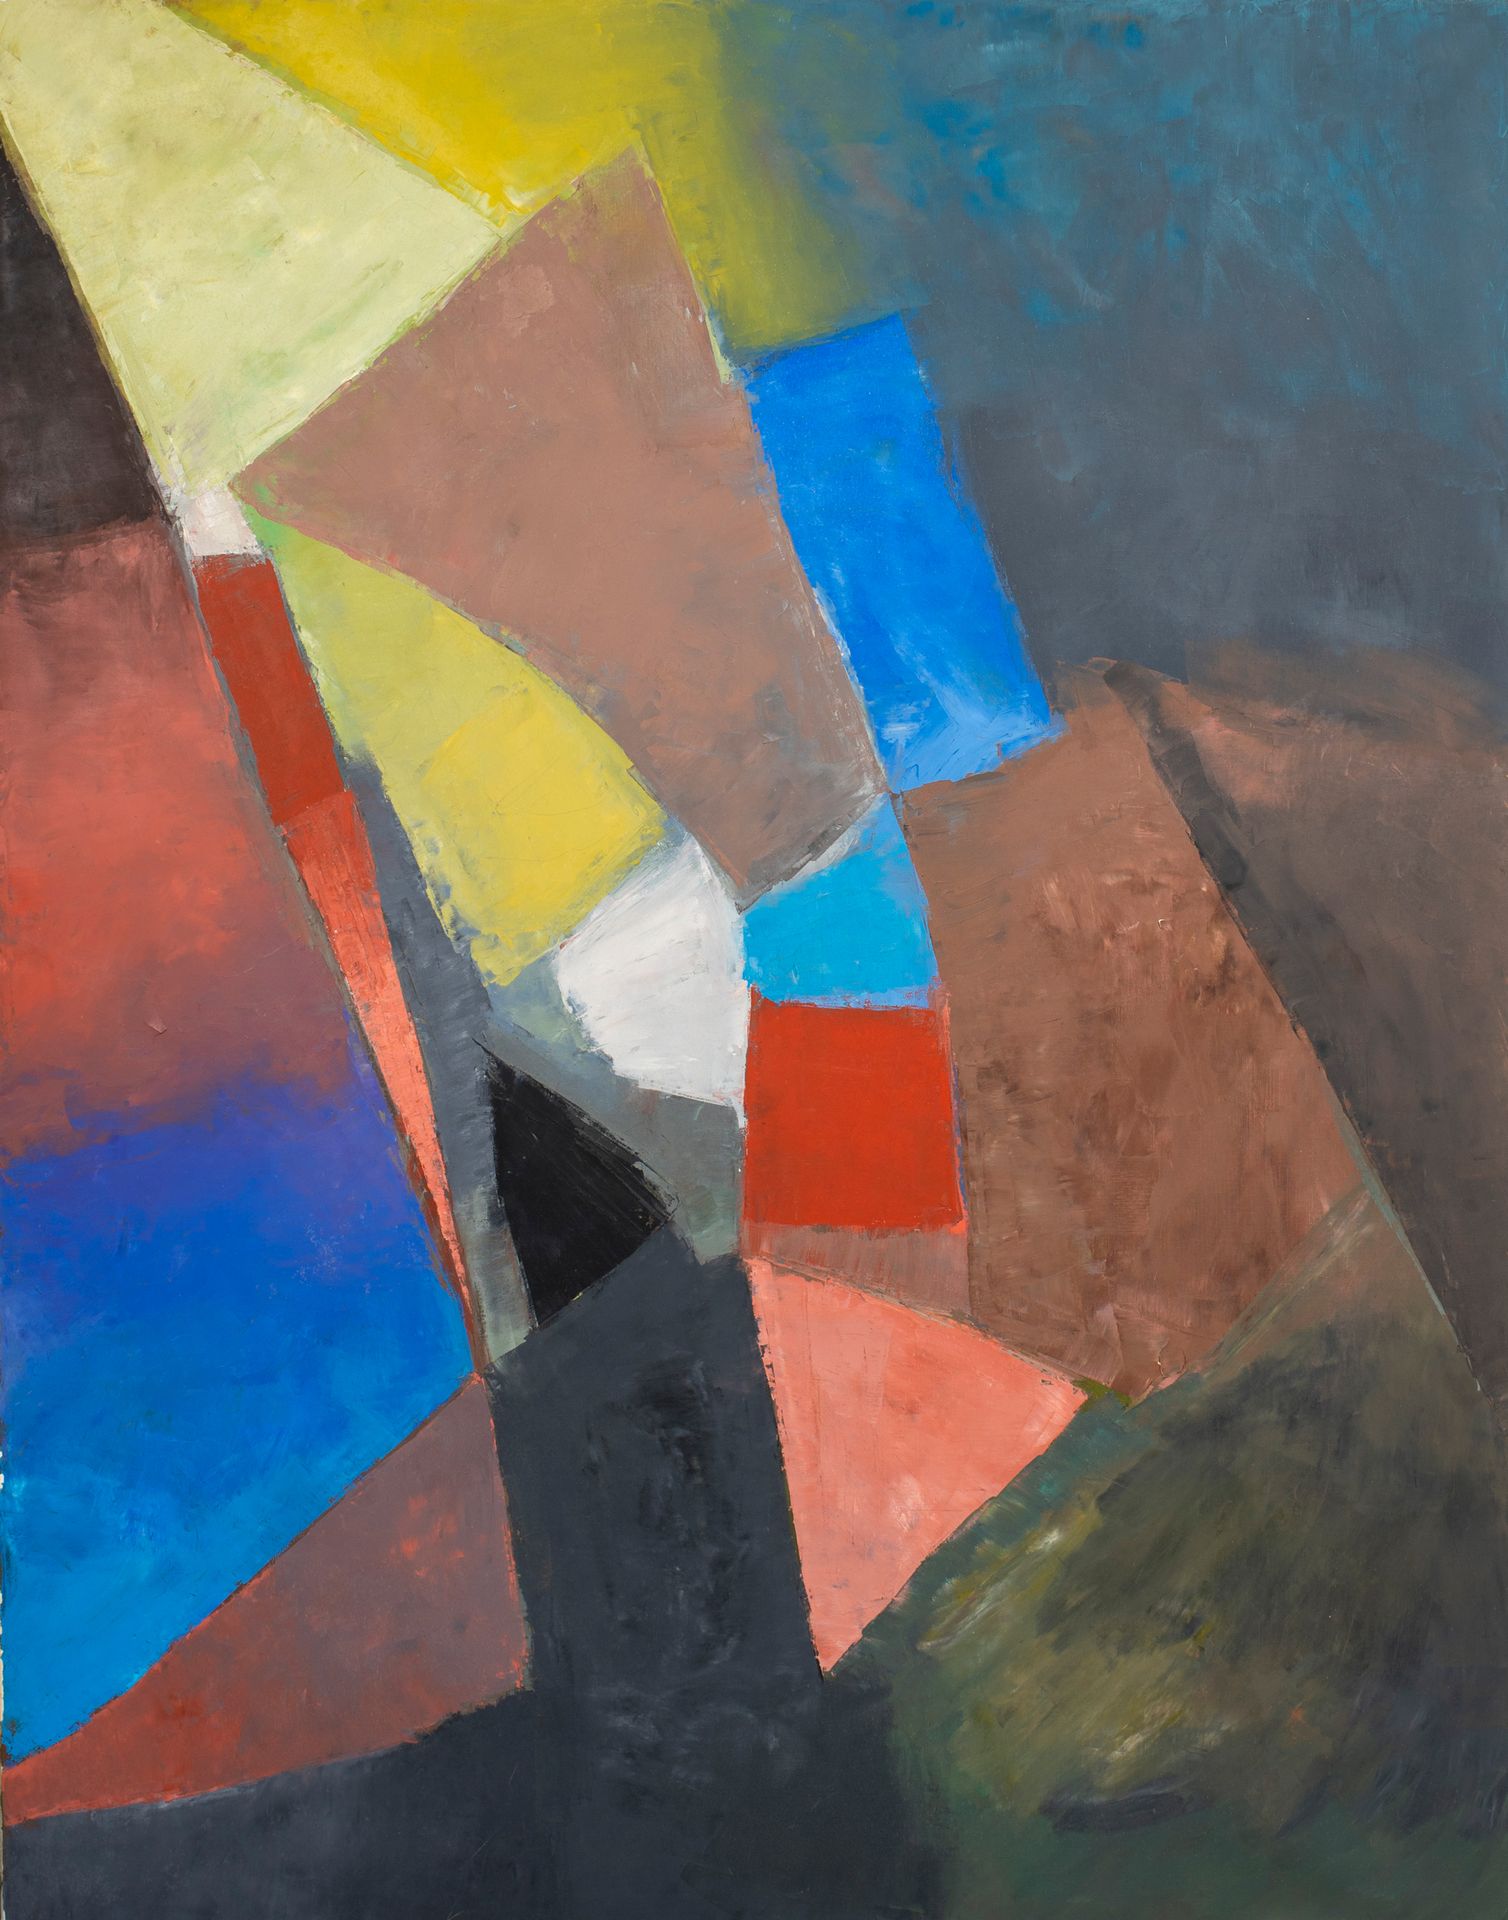 Null 米歇尔-法尔（1928-2009）。

组成。

布面油画。无符号。

146 x 114厘米。

小碎片。